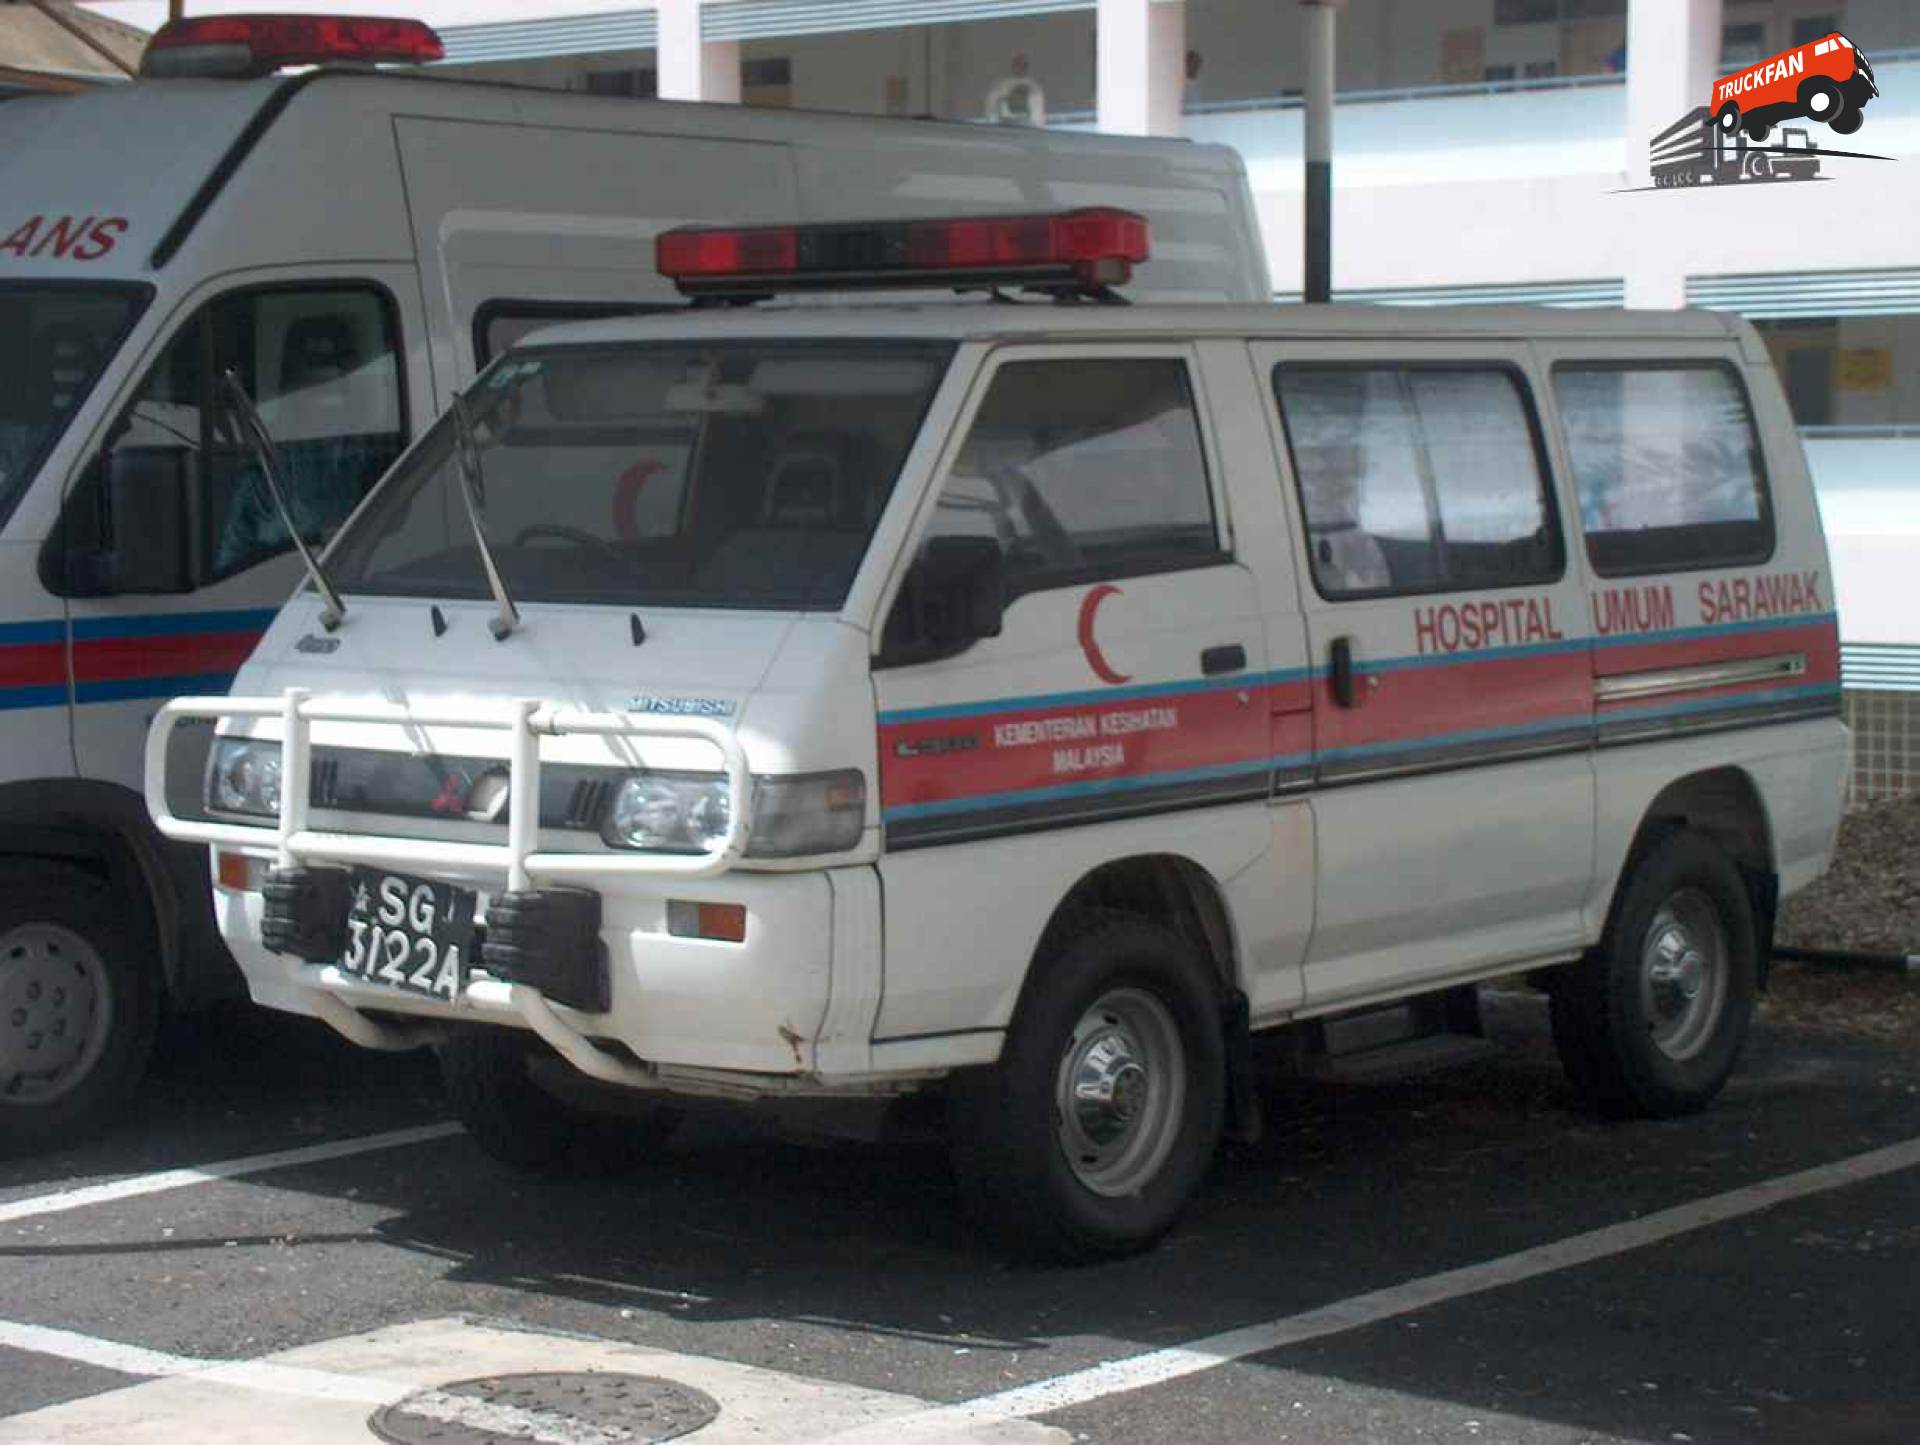 Mitsubishi L300